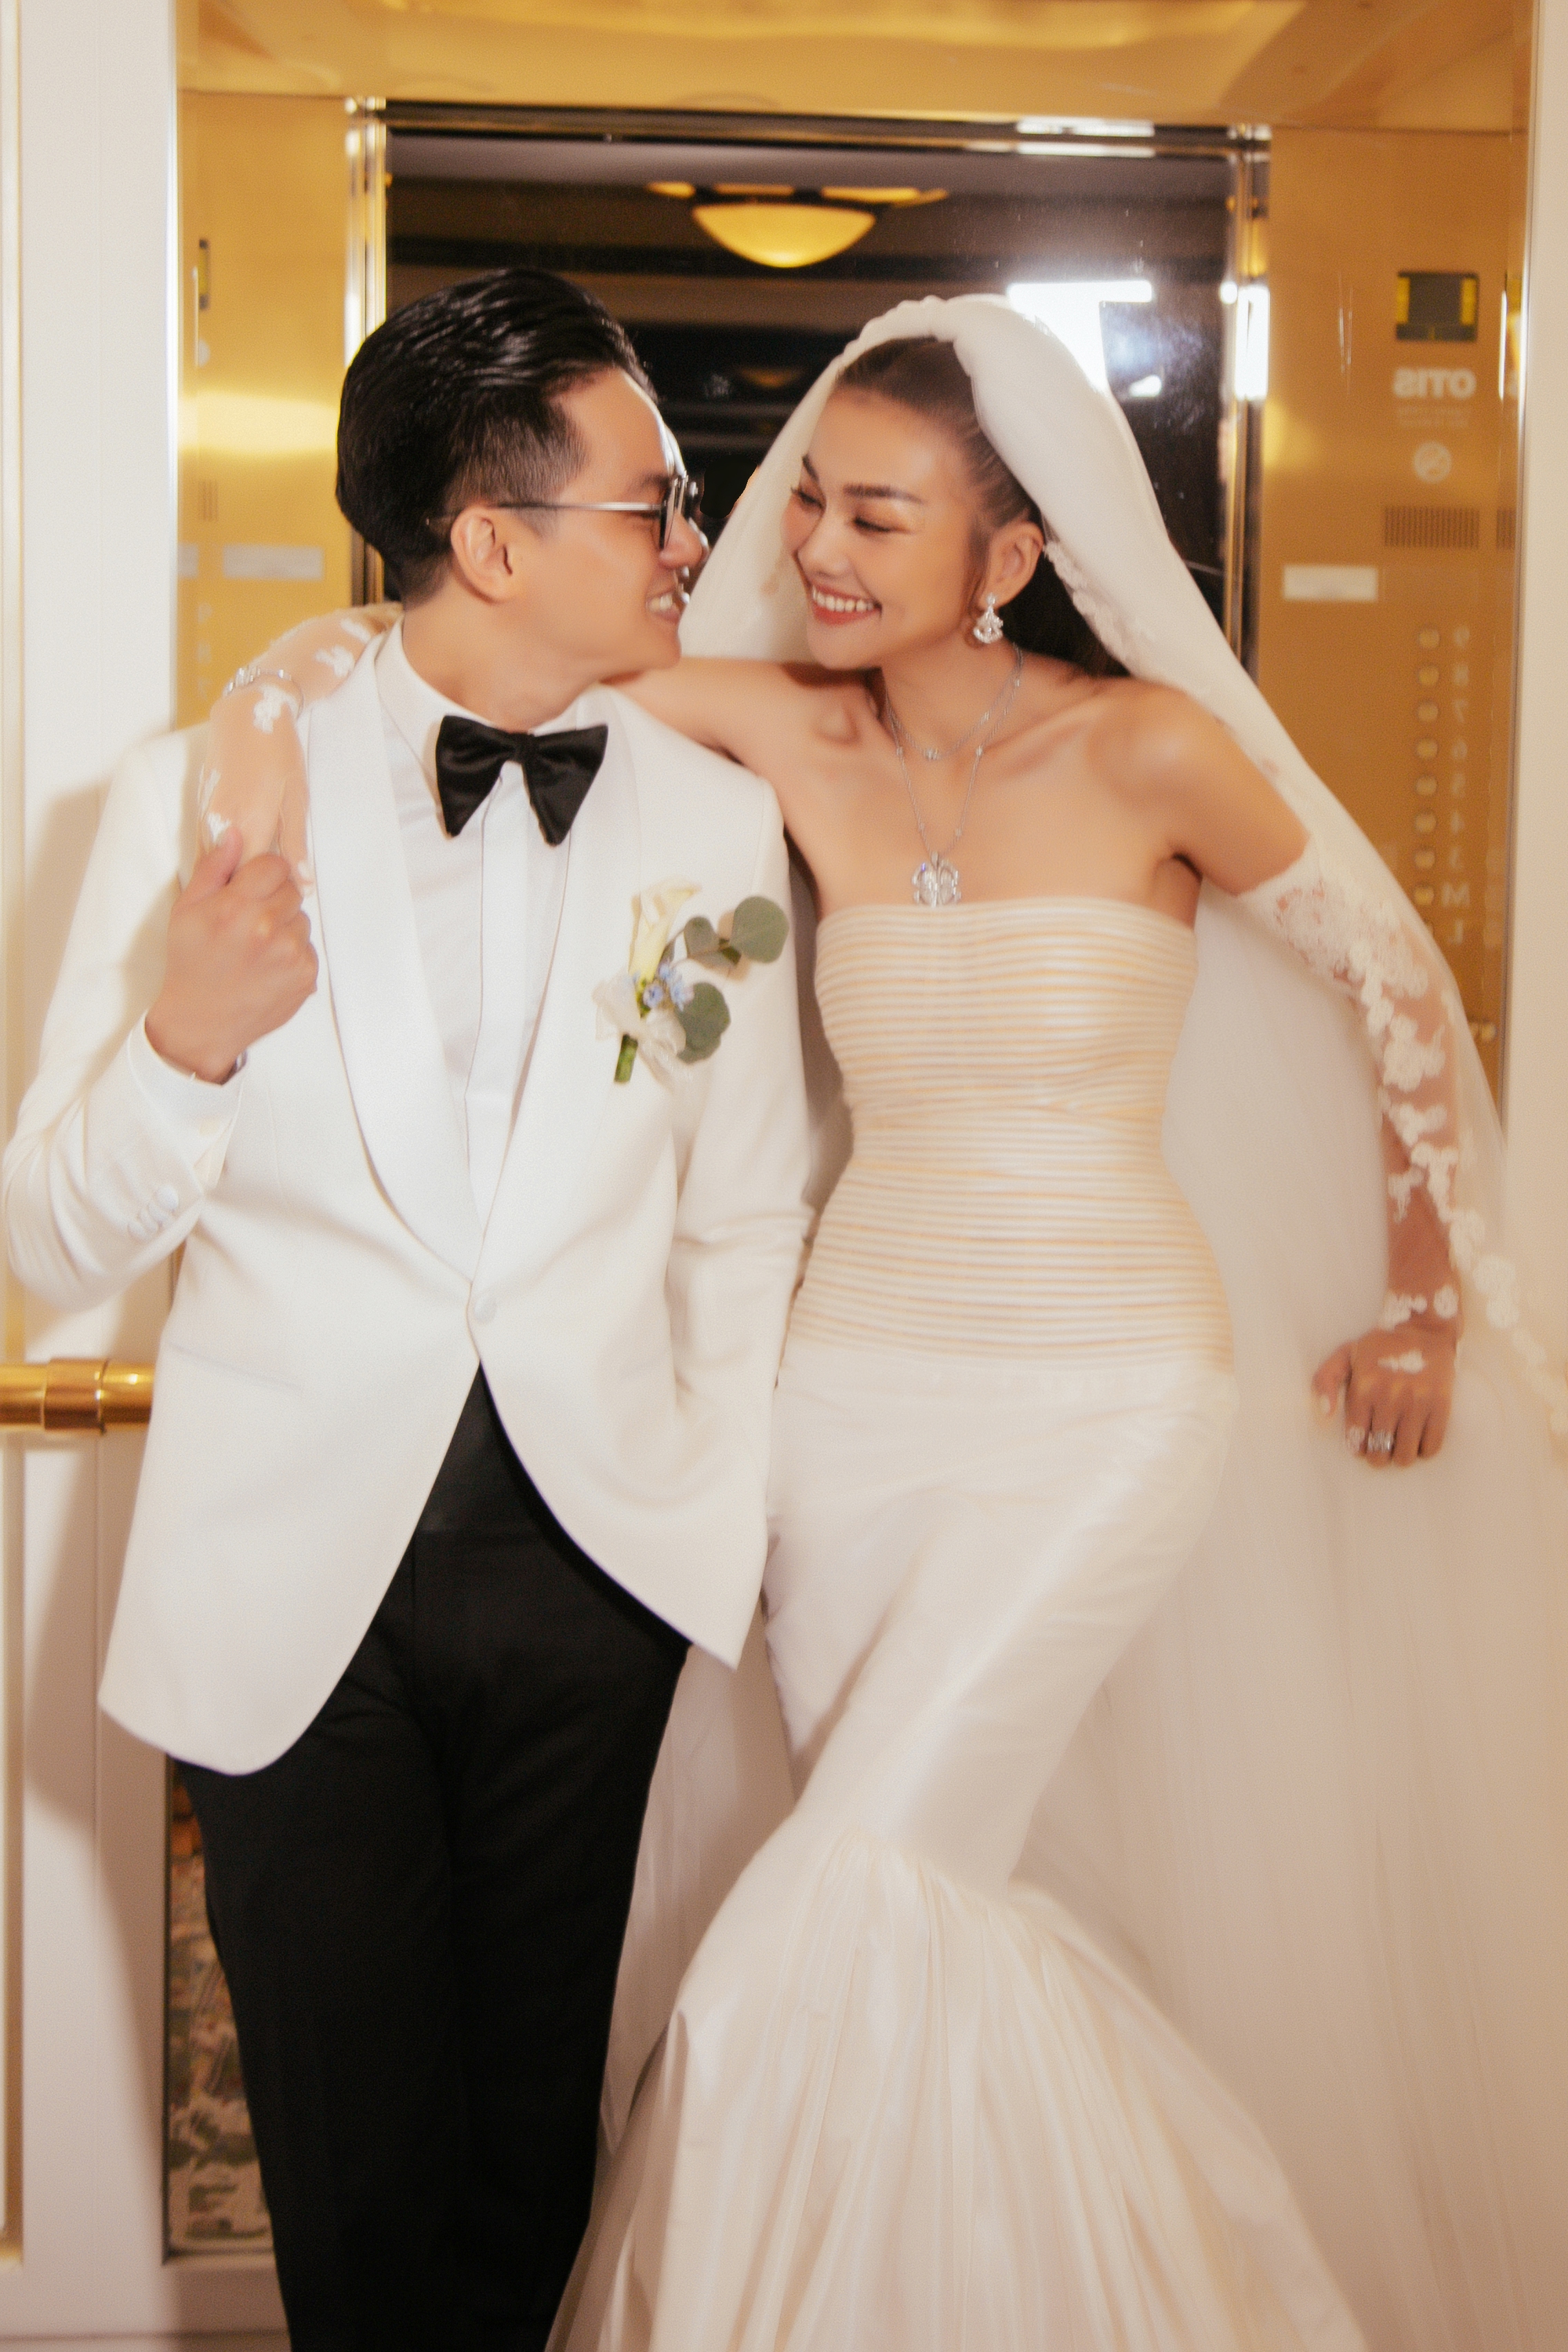 Siêu mẫu Thanh Hằng tiết lộ cuộc sống khi kết hôn với chồng nhạc trưởng - Ảnh 1.